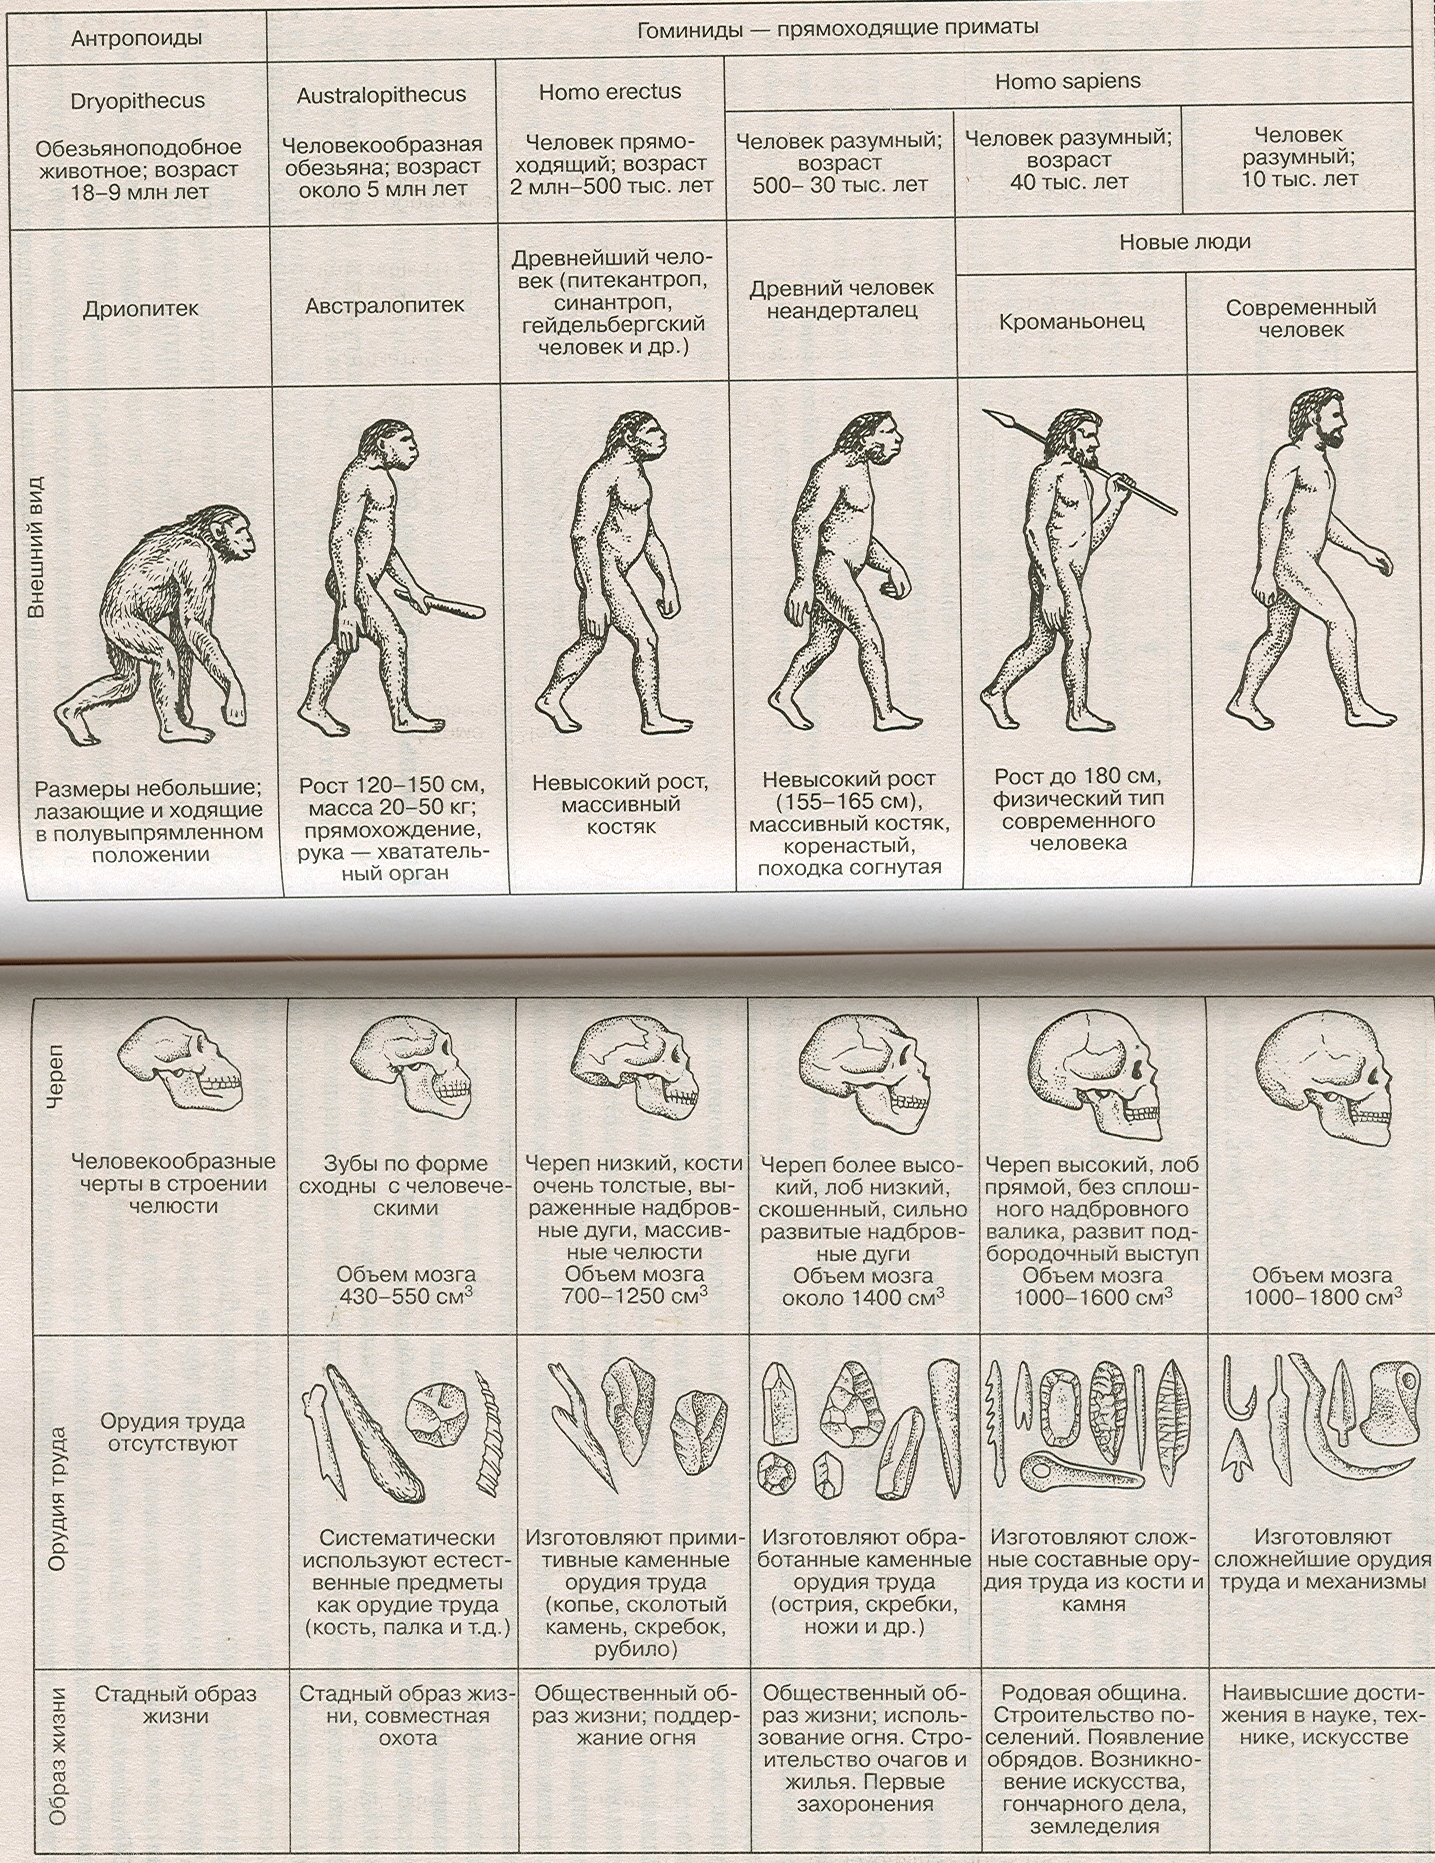 3 последовательности стадий развития человека. Этапы развития человека таблица этапы антропогенеза. Этапы эволюции человека таблица дриопитек. Основные стадии развития человека таблица. Стадия развития человека таблица по биологии.